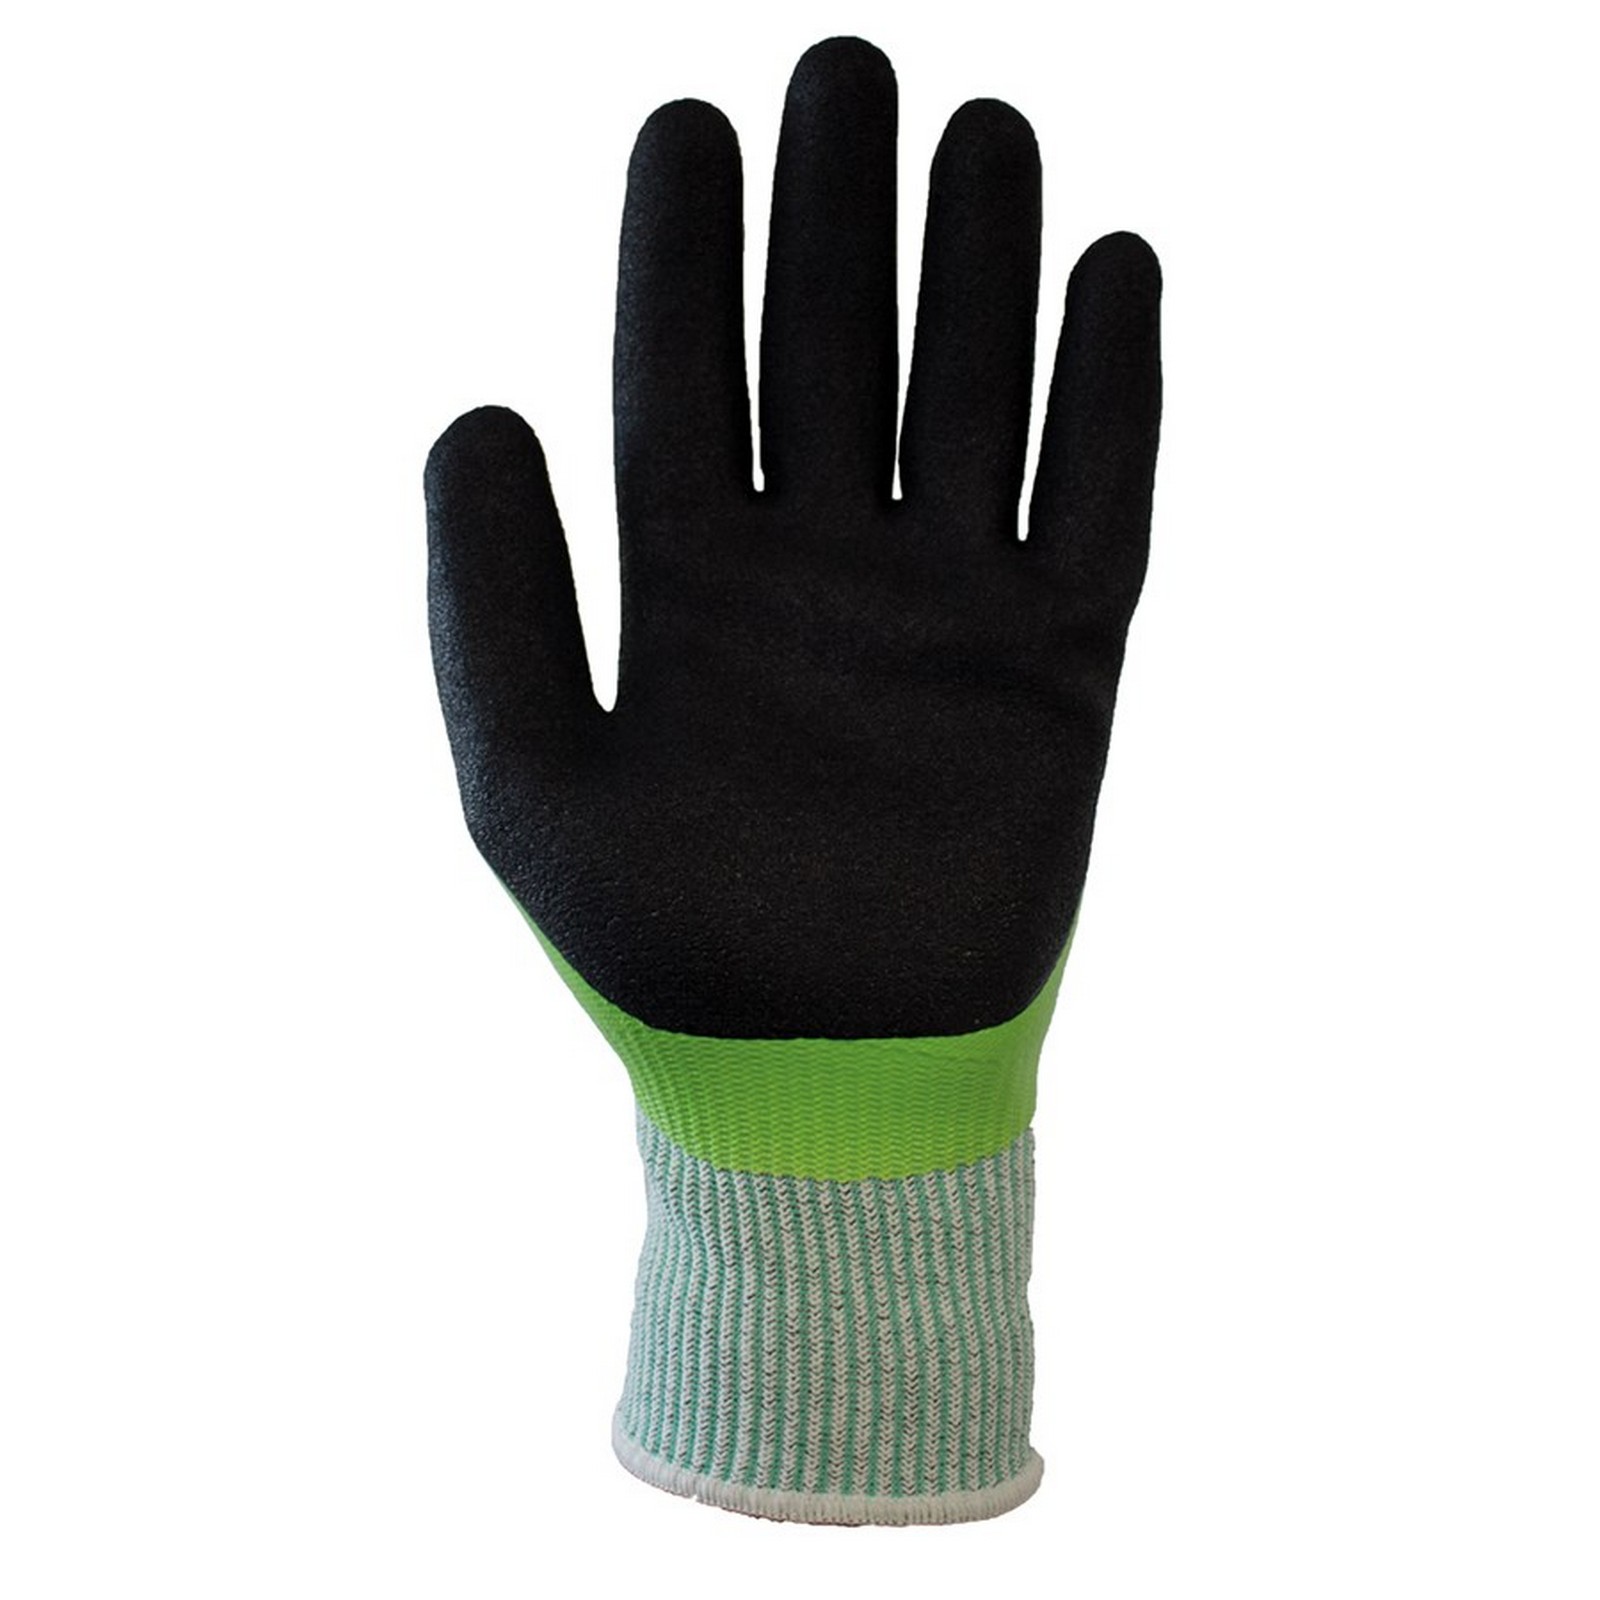 Traffiglove Waterproof Cut 5 gloves | WISE Worksafe